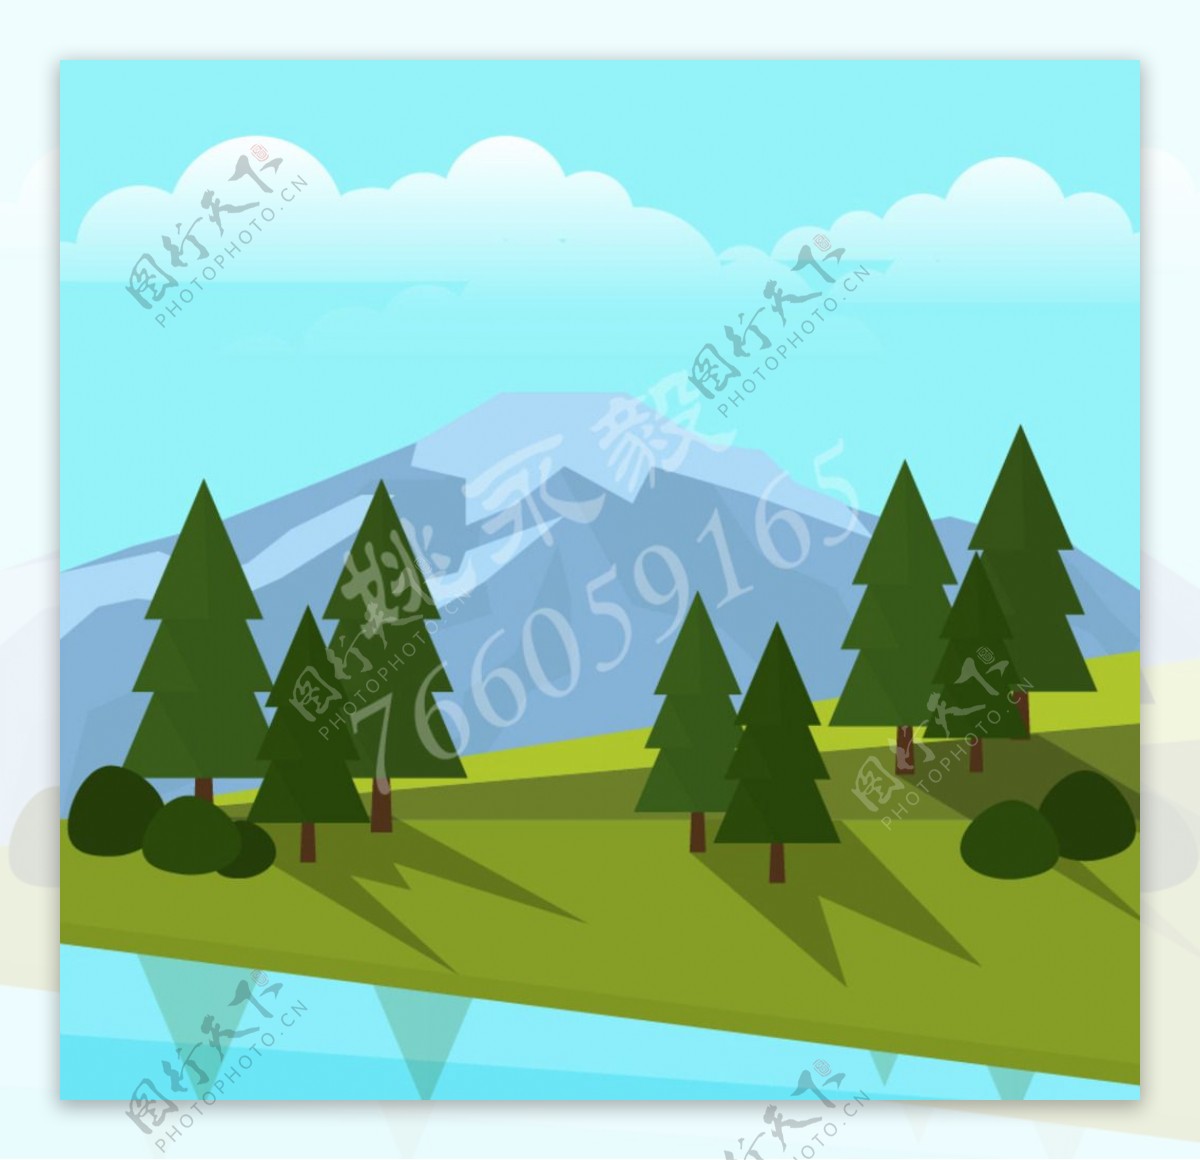 绿色山坡树木和远山风景